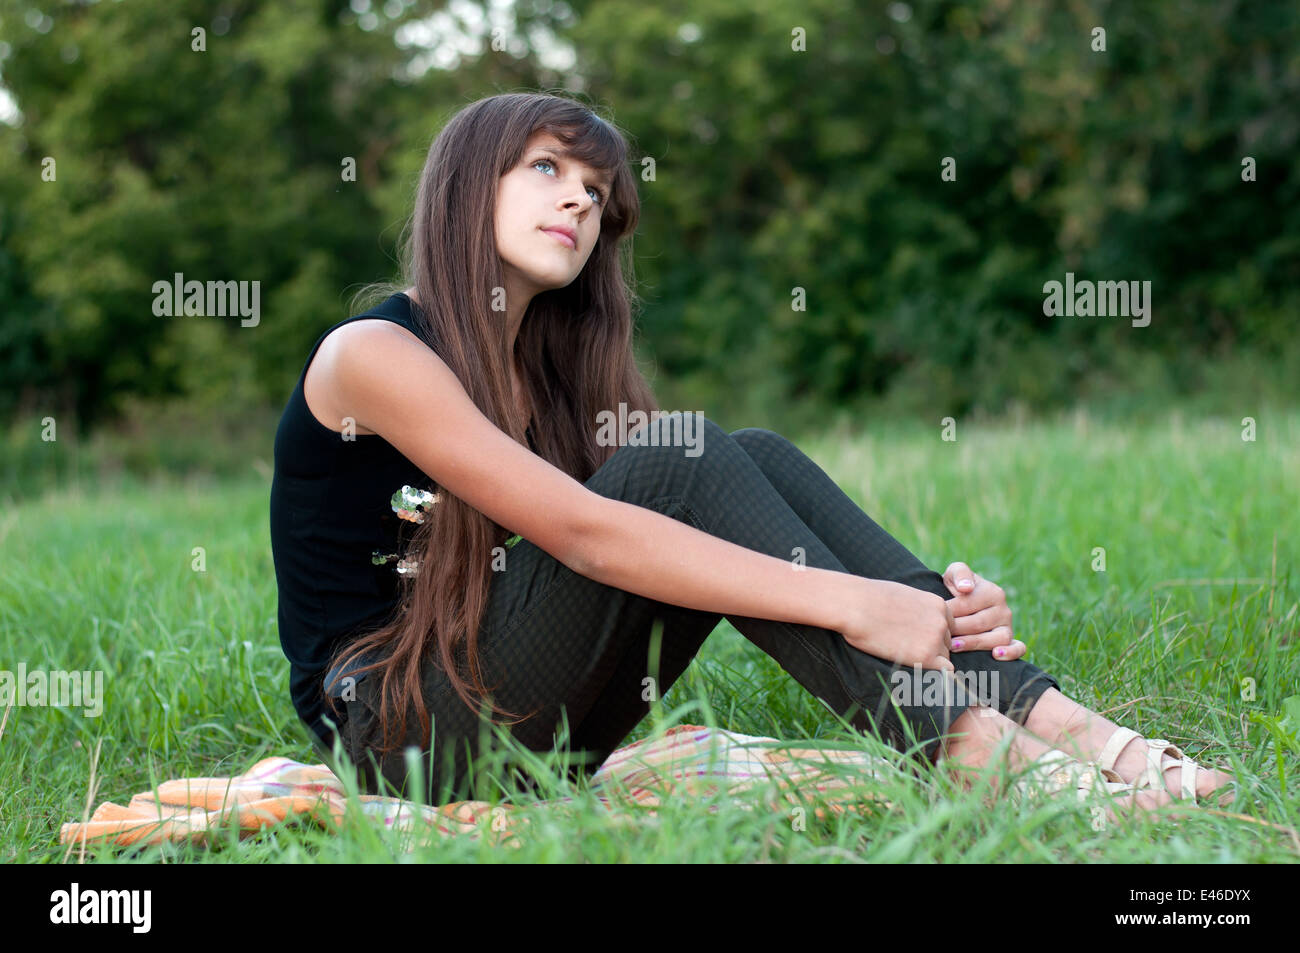 Mädchen Teen Teenager Übergang Alter 13 14 15 Jahre brünette Haare lange dunkle Natur Park Open-Air schönes Porträt stehen Shirt Stockfoto